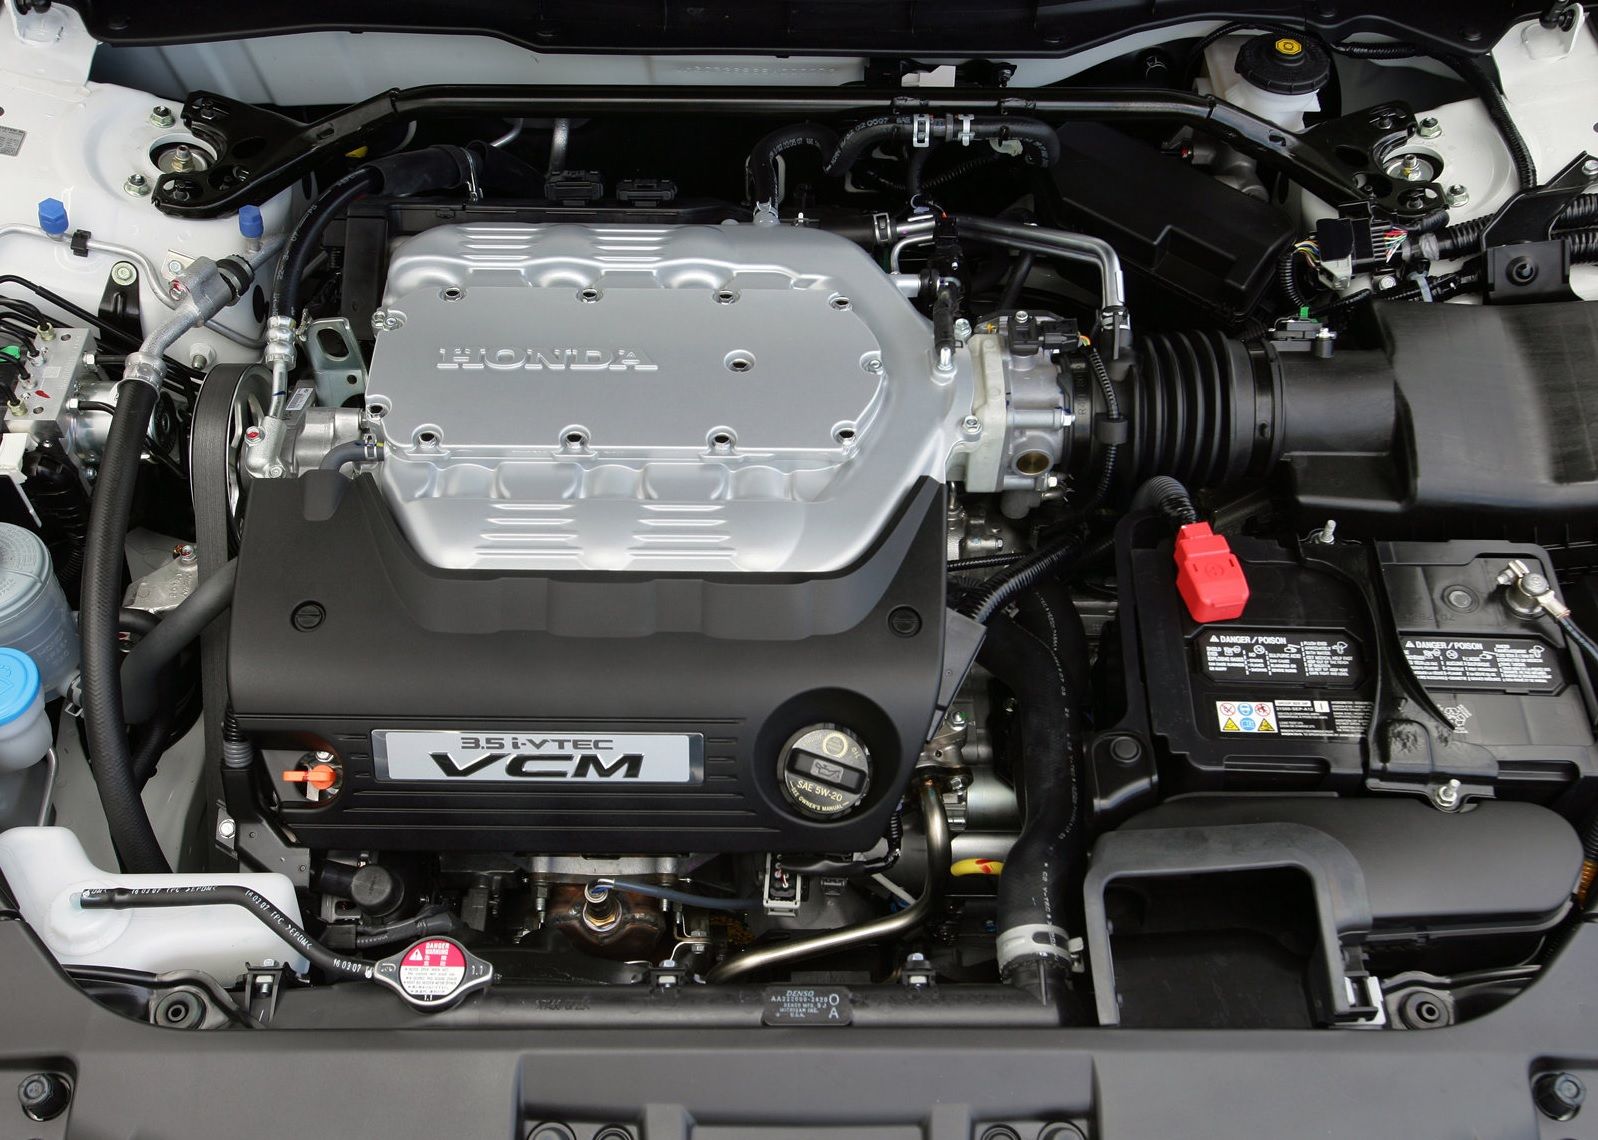 2008 Honda Accord V6 Engine